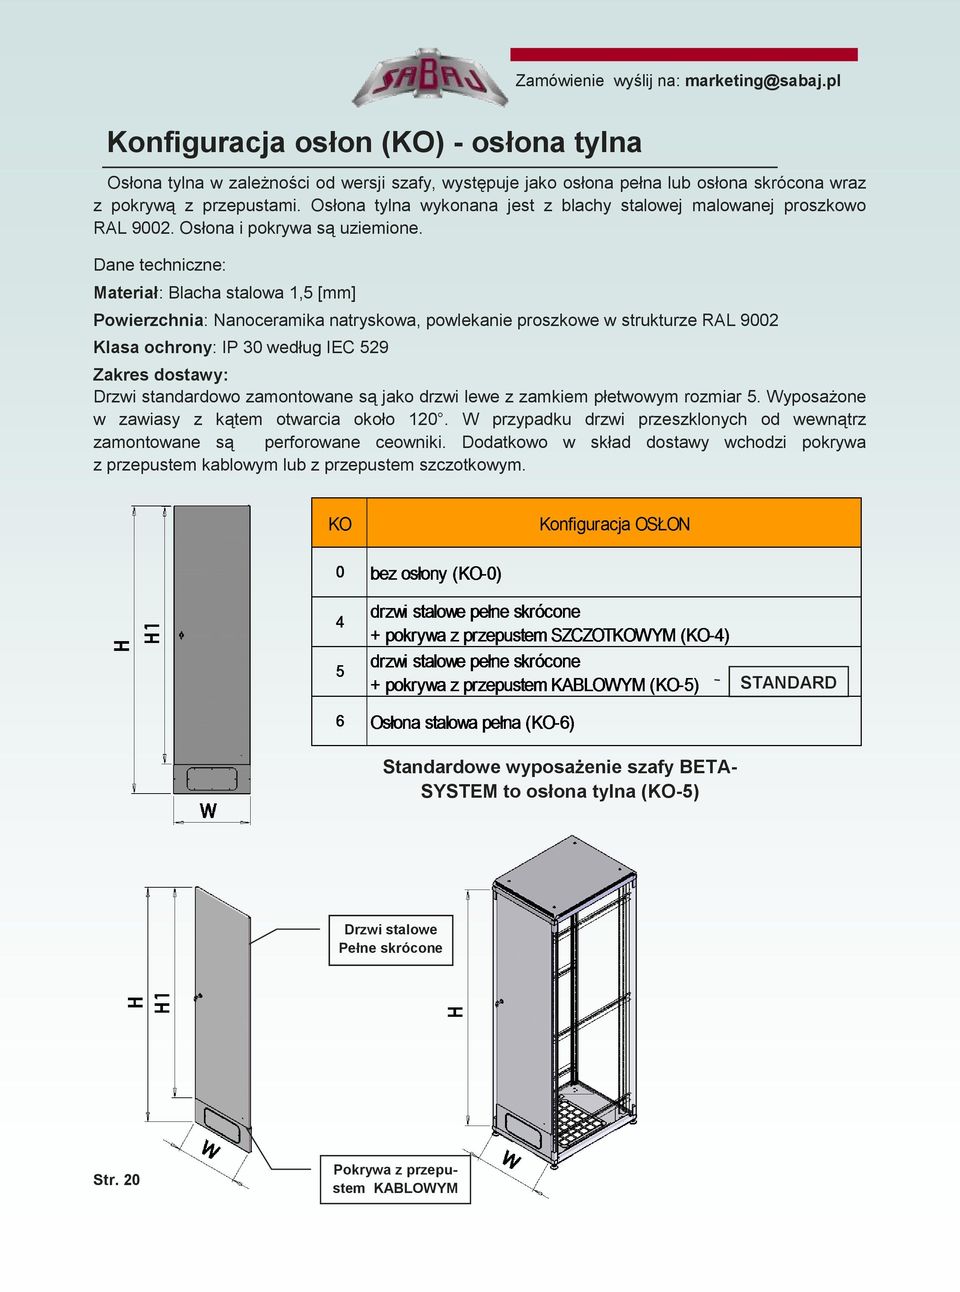 Dane techniczne: Materiał: Blacha stalowa 1,5 [mm] Powierzchnia: Nanoceramika natryskowa, powlekanie proszkowe w strukturze RAL 9002 Klasa ochrony: IP 30 według IEC 529 Zakres dostawy: Drzwi